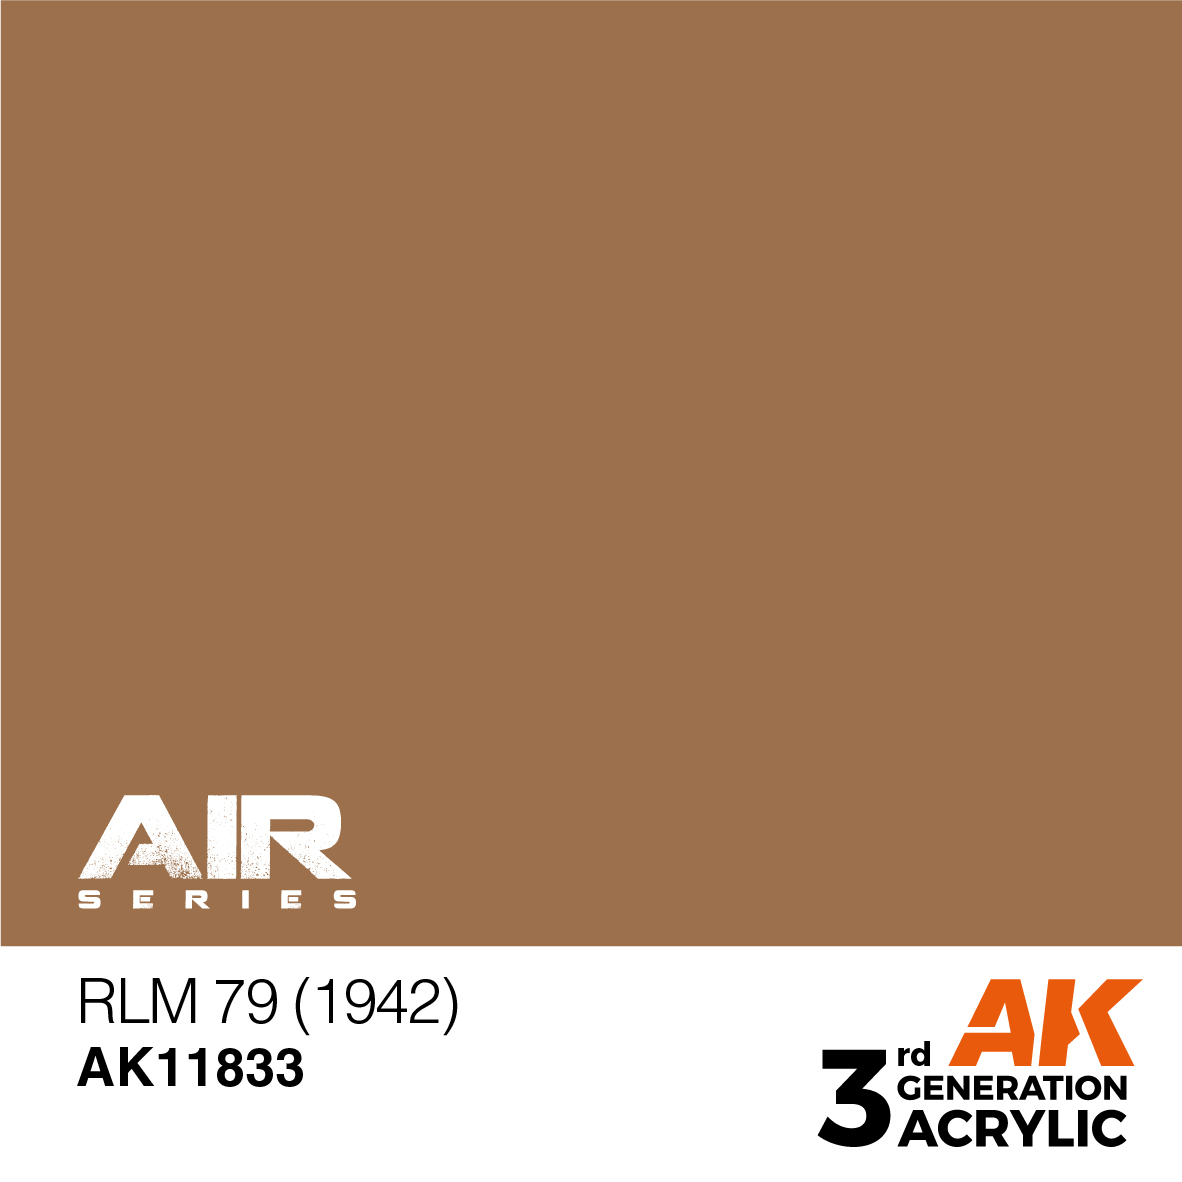 RLM 79 (1942) – AIR